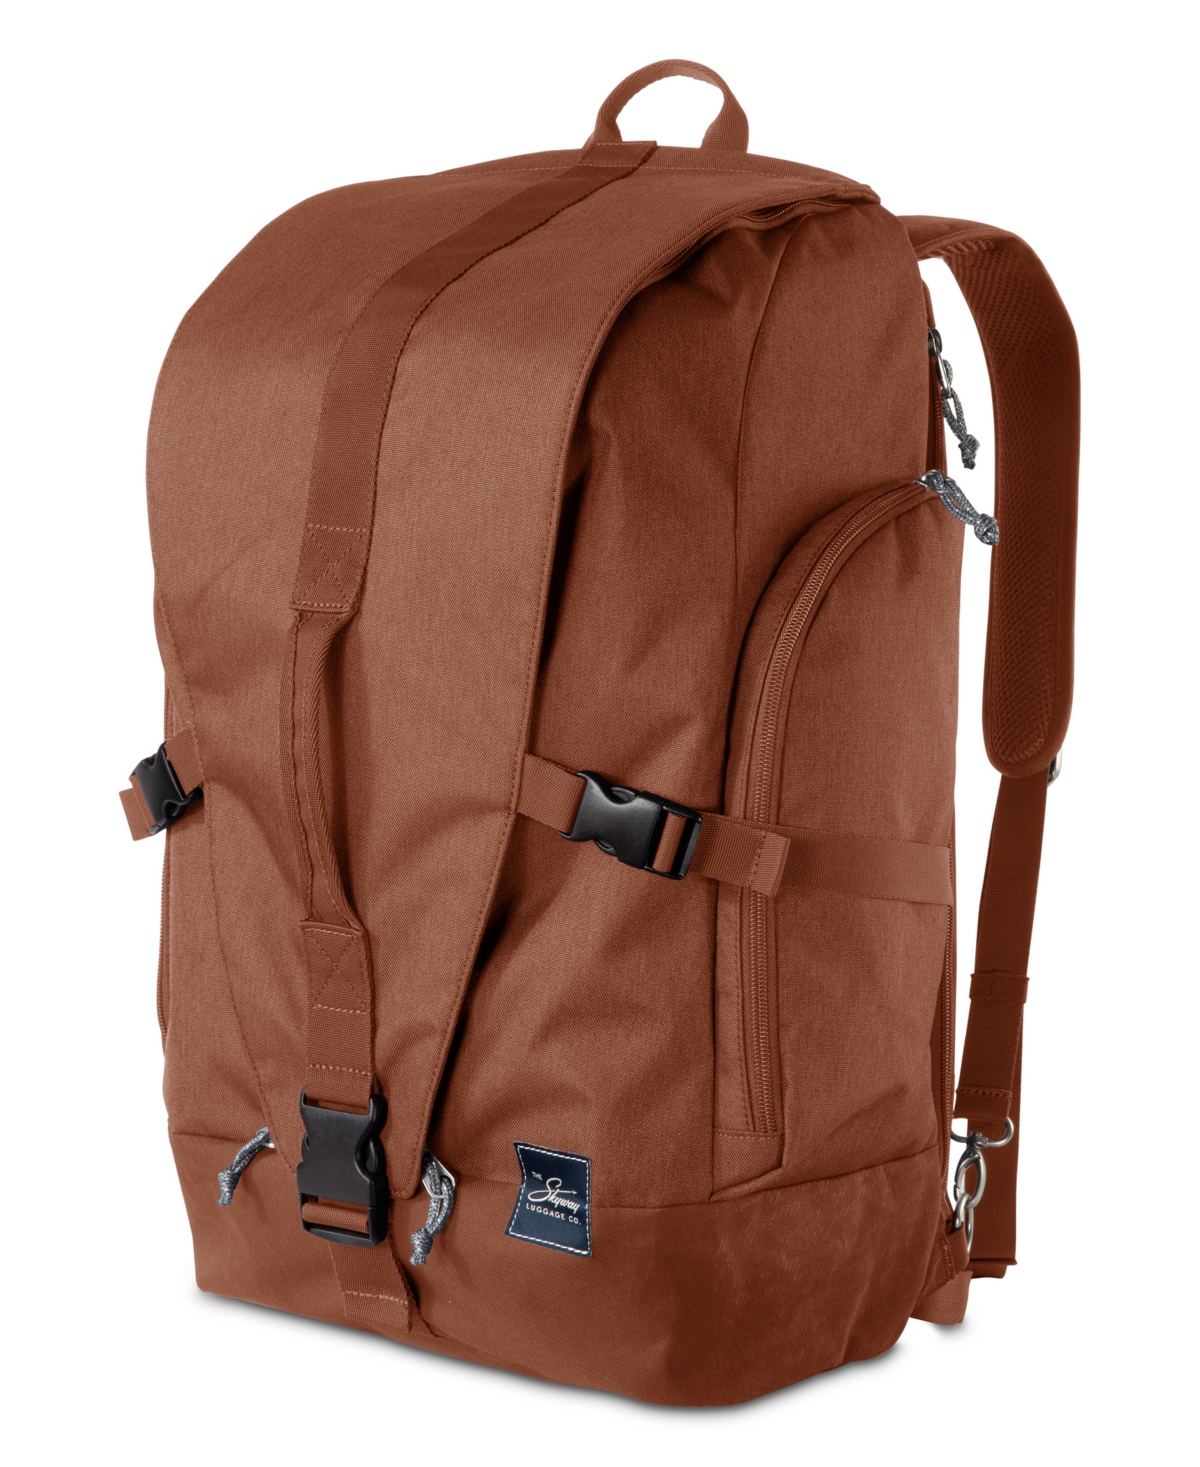 Rainier Weekender Backpack, 43" - Moab Red